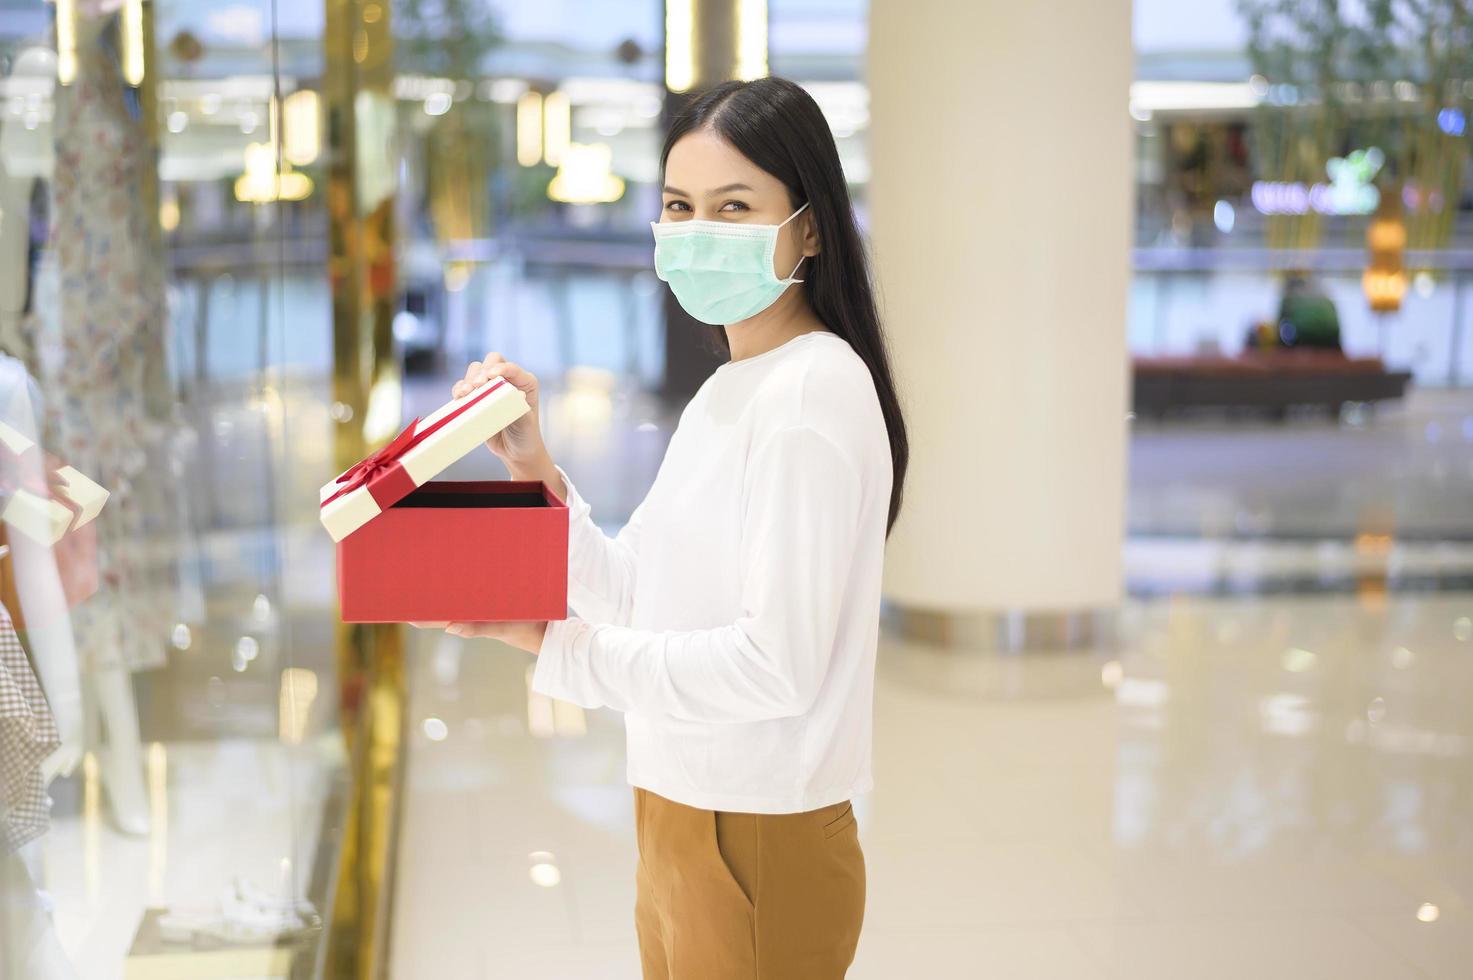 donna che indossa una maschera protettiva con in mano una confezione regalo nel centro commerciale, lo shopping sotto la pandemia covid-19, il ringraziamento e il concetto di natale. foto